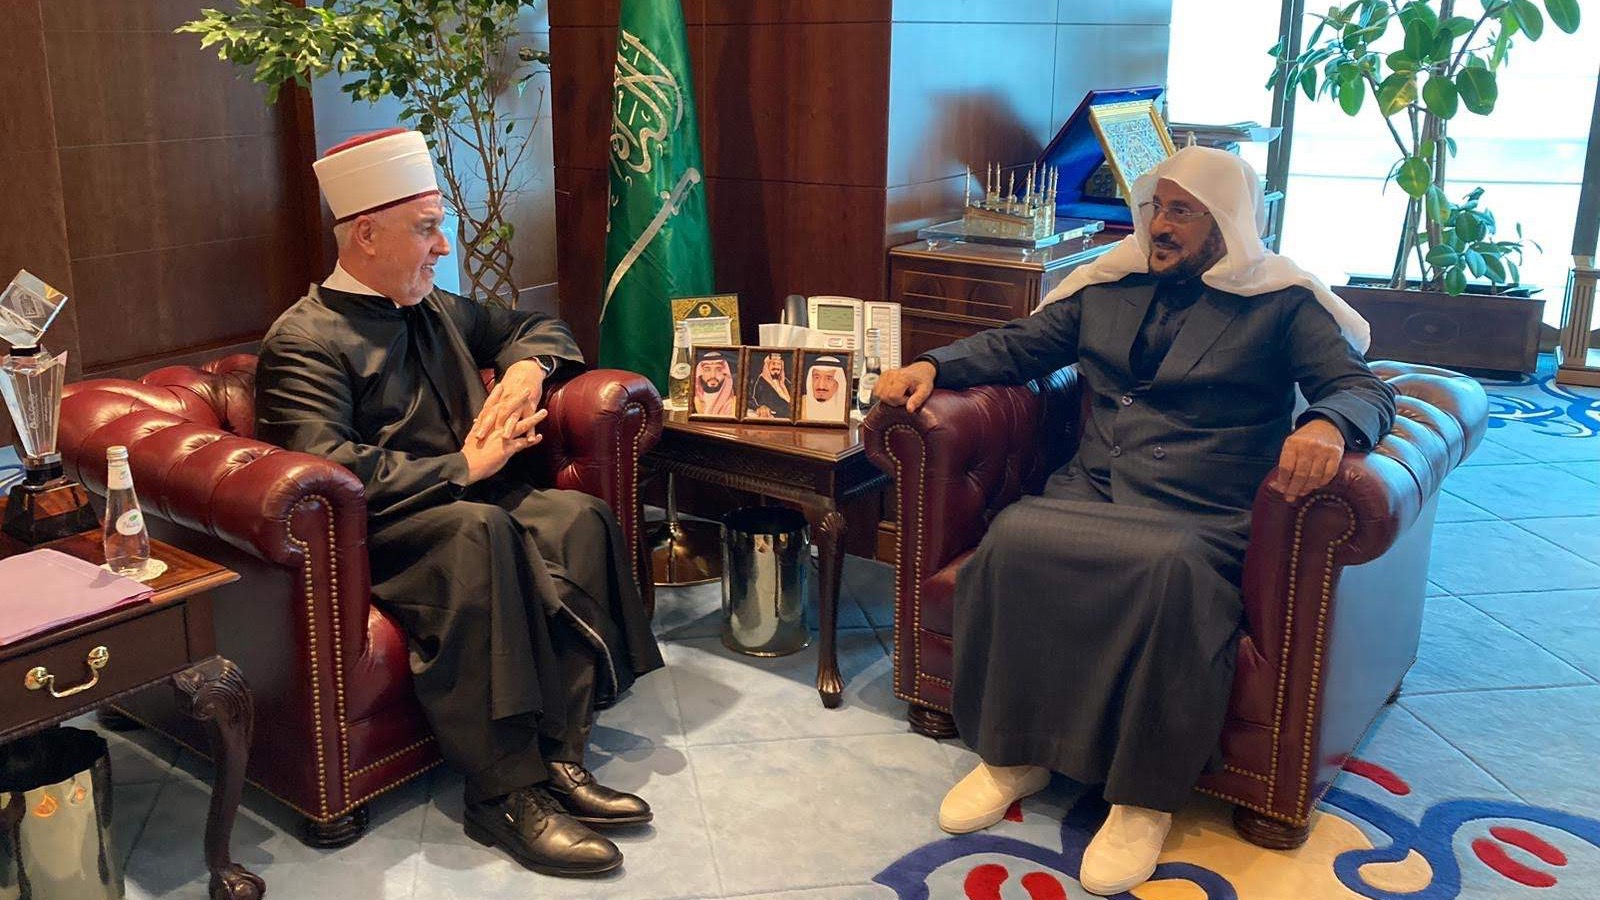 Reisul-ulema se sastao s ministrom islamskih poslova Kraljevine Saudijske Arabije